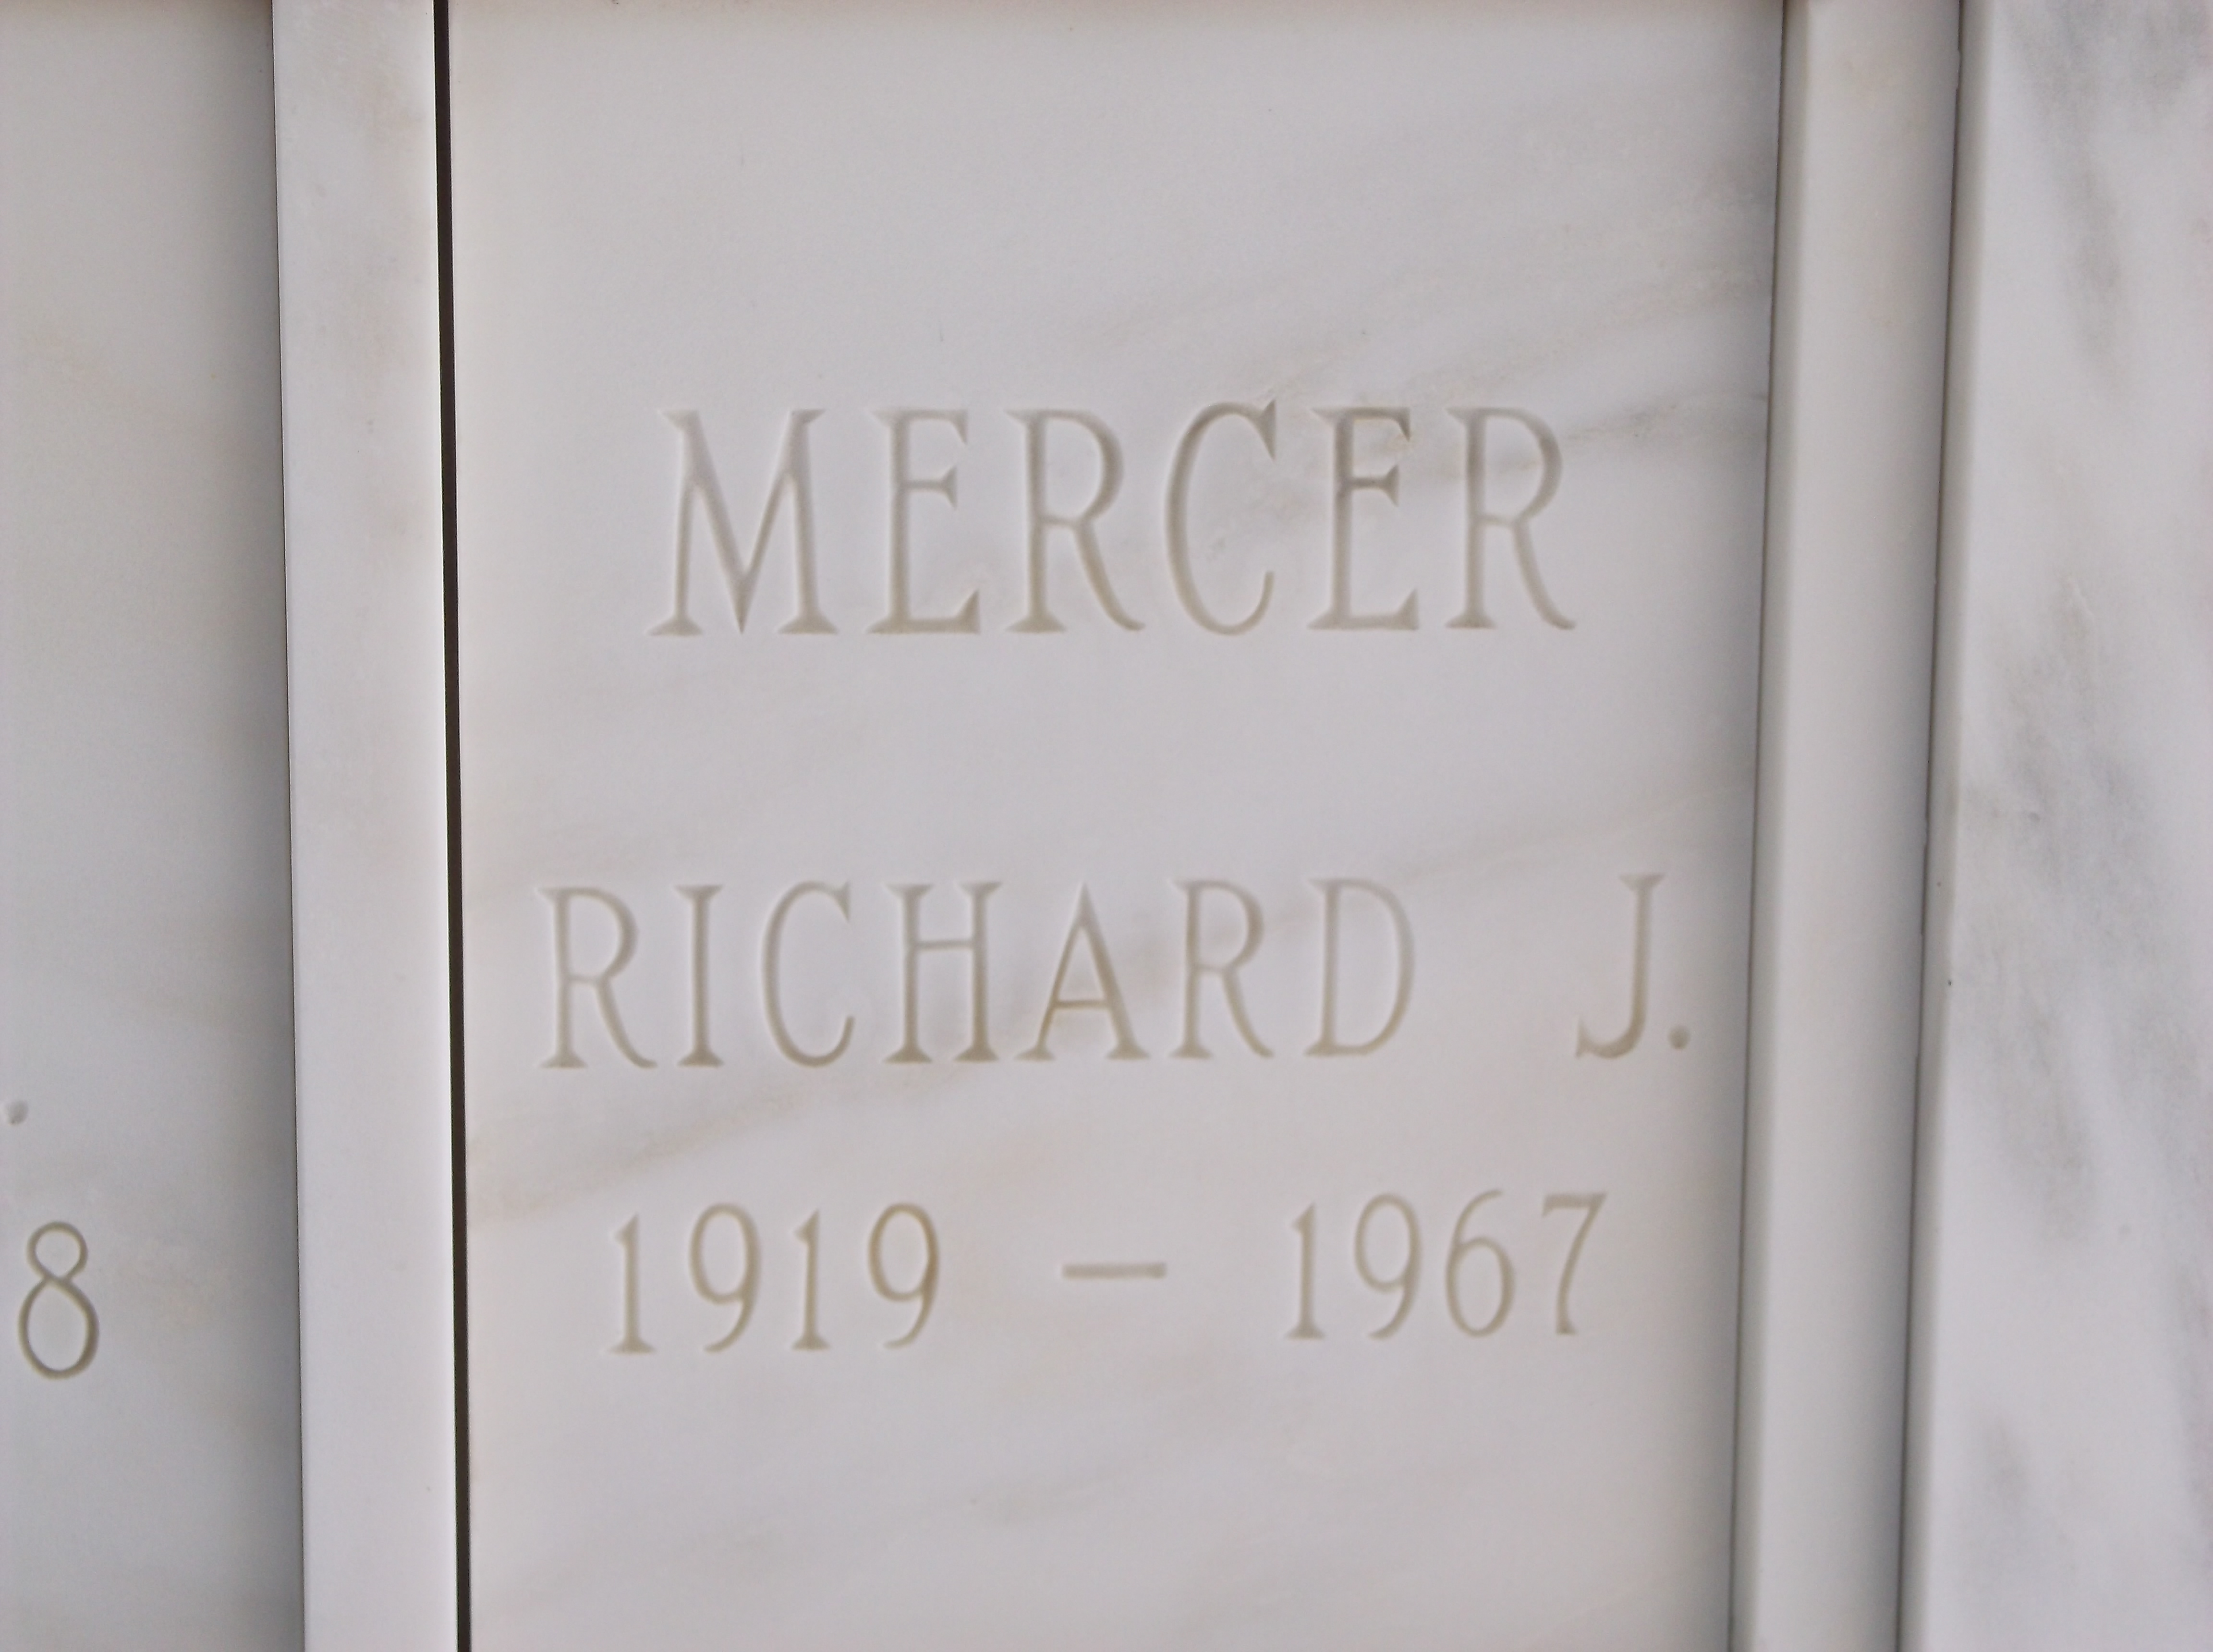 Richard J Mercer